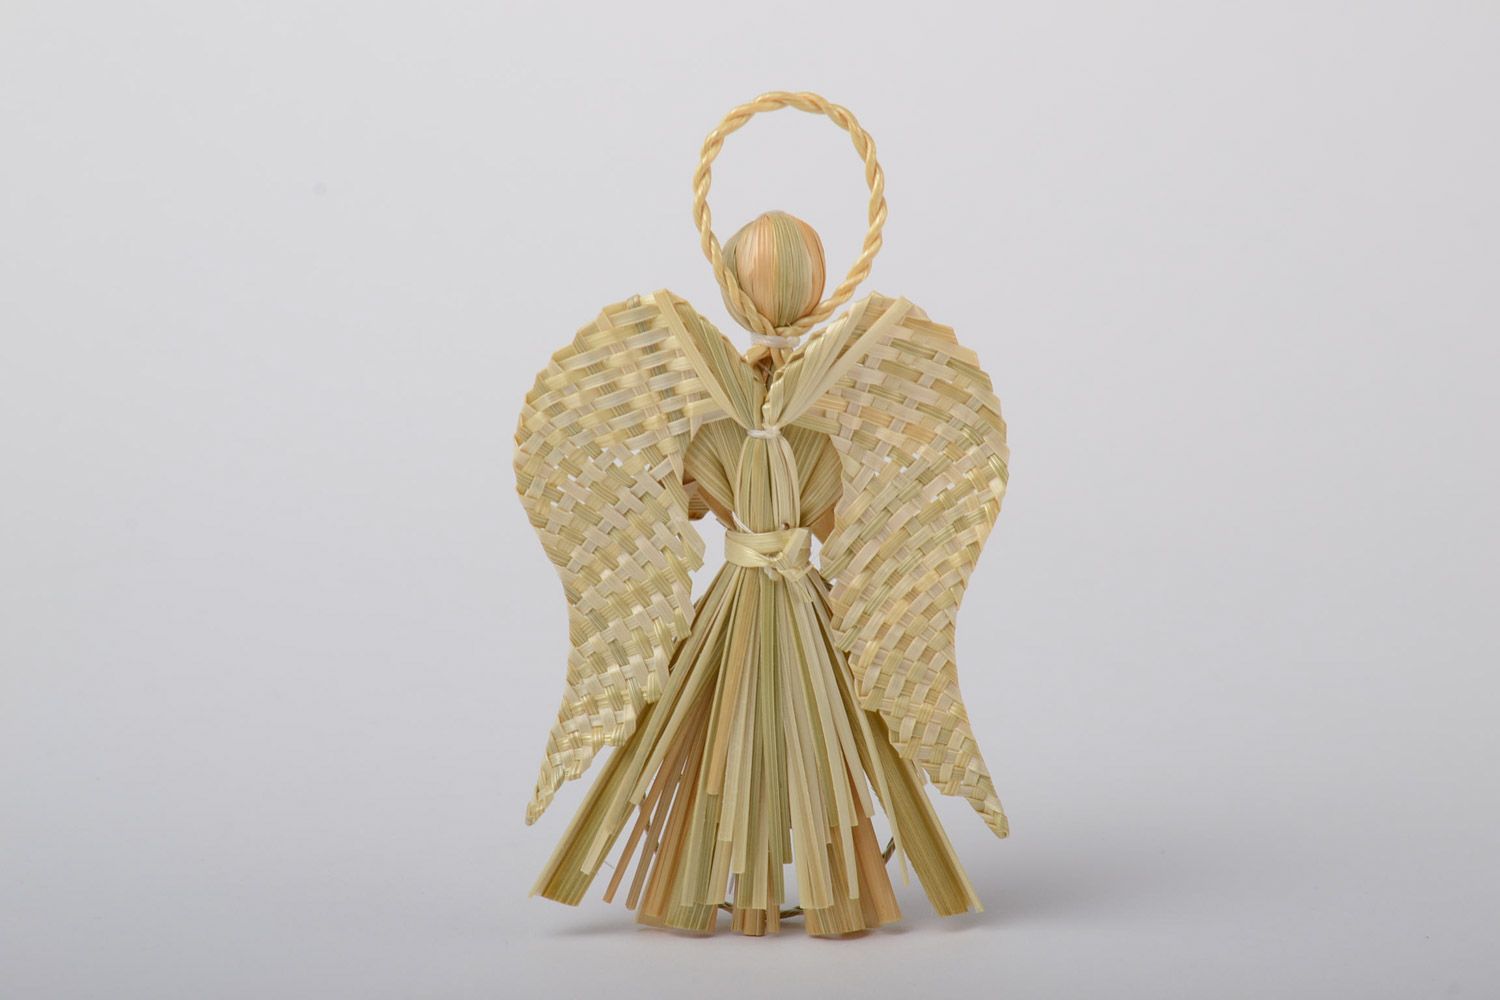 Ангел хранитель фигурка плетеная из соломы небольшого размера ручная работа фото 3